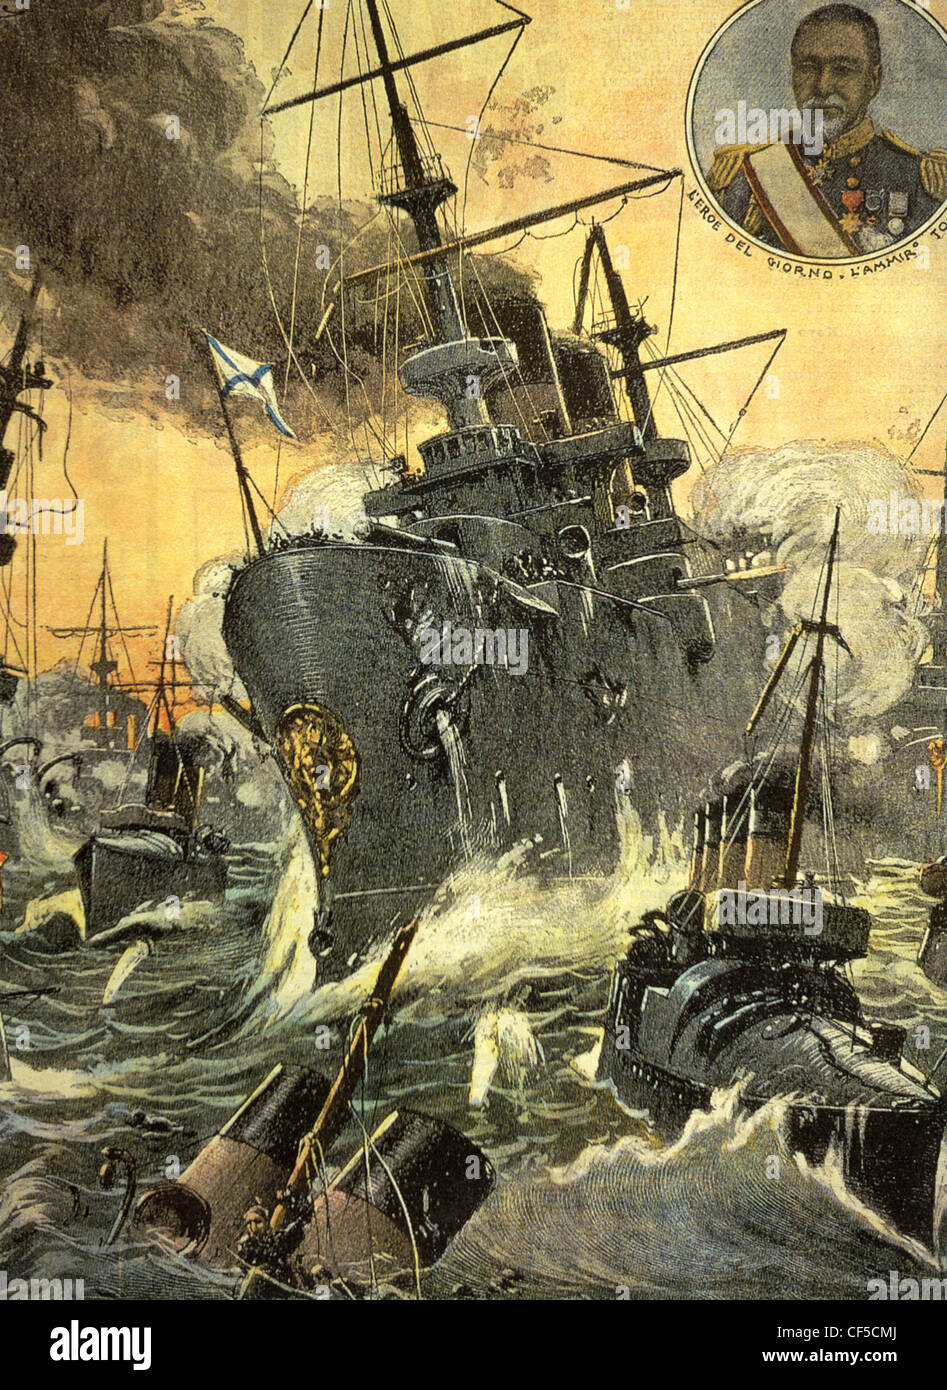 La guerre russo-japonaise 1905 magazine français montre bataille de Tsushima 27-8 Mai 1905 avec l'Amiral Togo indiquées comme "héros du jour" Banque D'Images